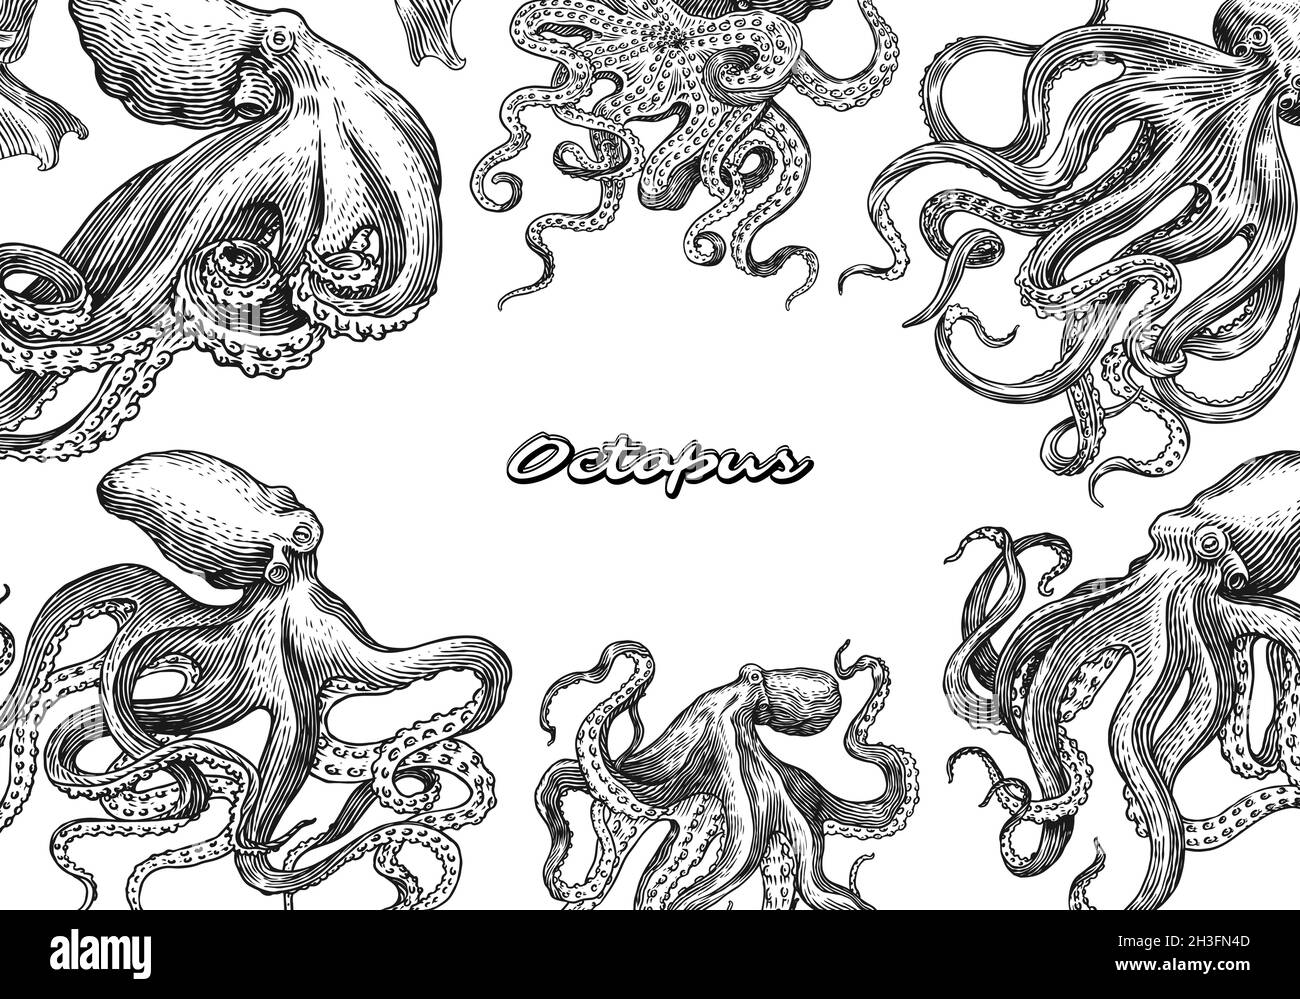 Seeoktopus-Poster oder -Banner. Eingraviert von Hand gezeichnet in alter Skizze, Vintage Kreatur. Nautisch oder marine, Monster. Tier im Ozean. Vorlage für Stock Vektor